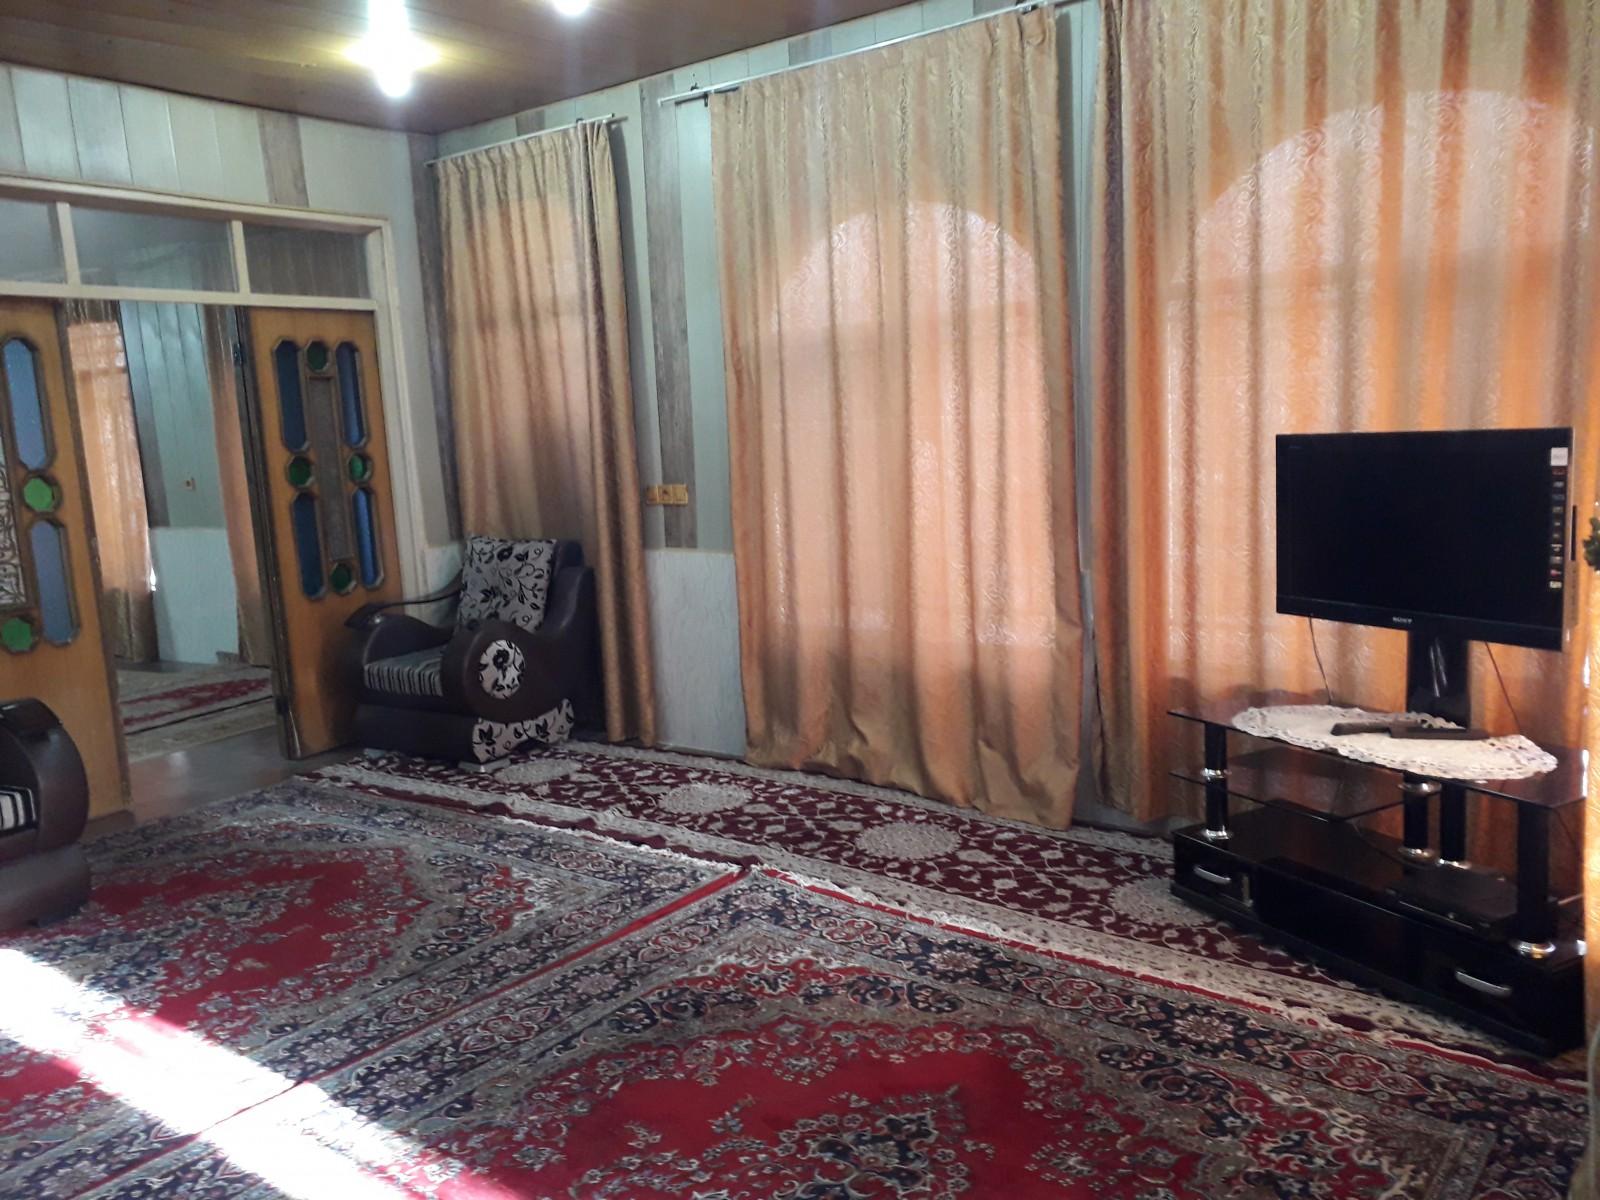 اجاره ویلا در اصفهان -باغ بهادران